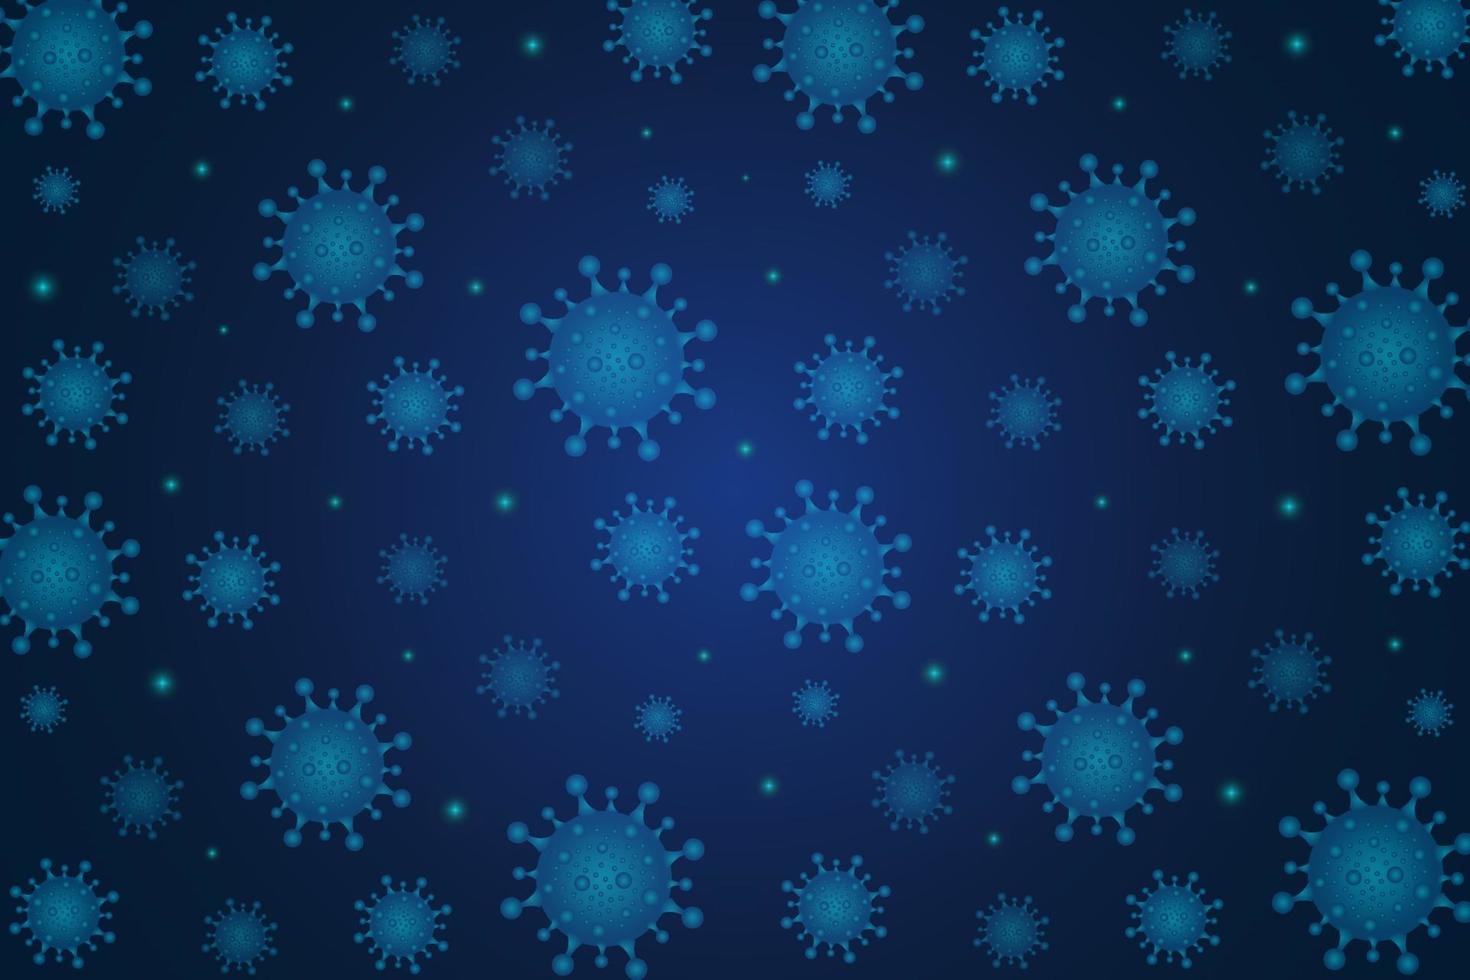 sfondo blu modello virus vettore